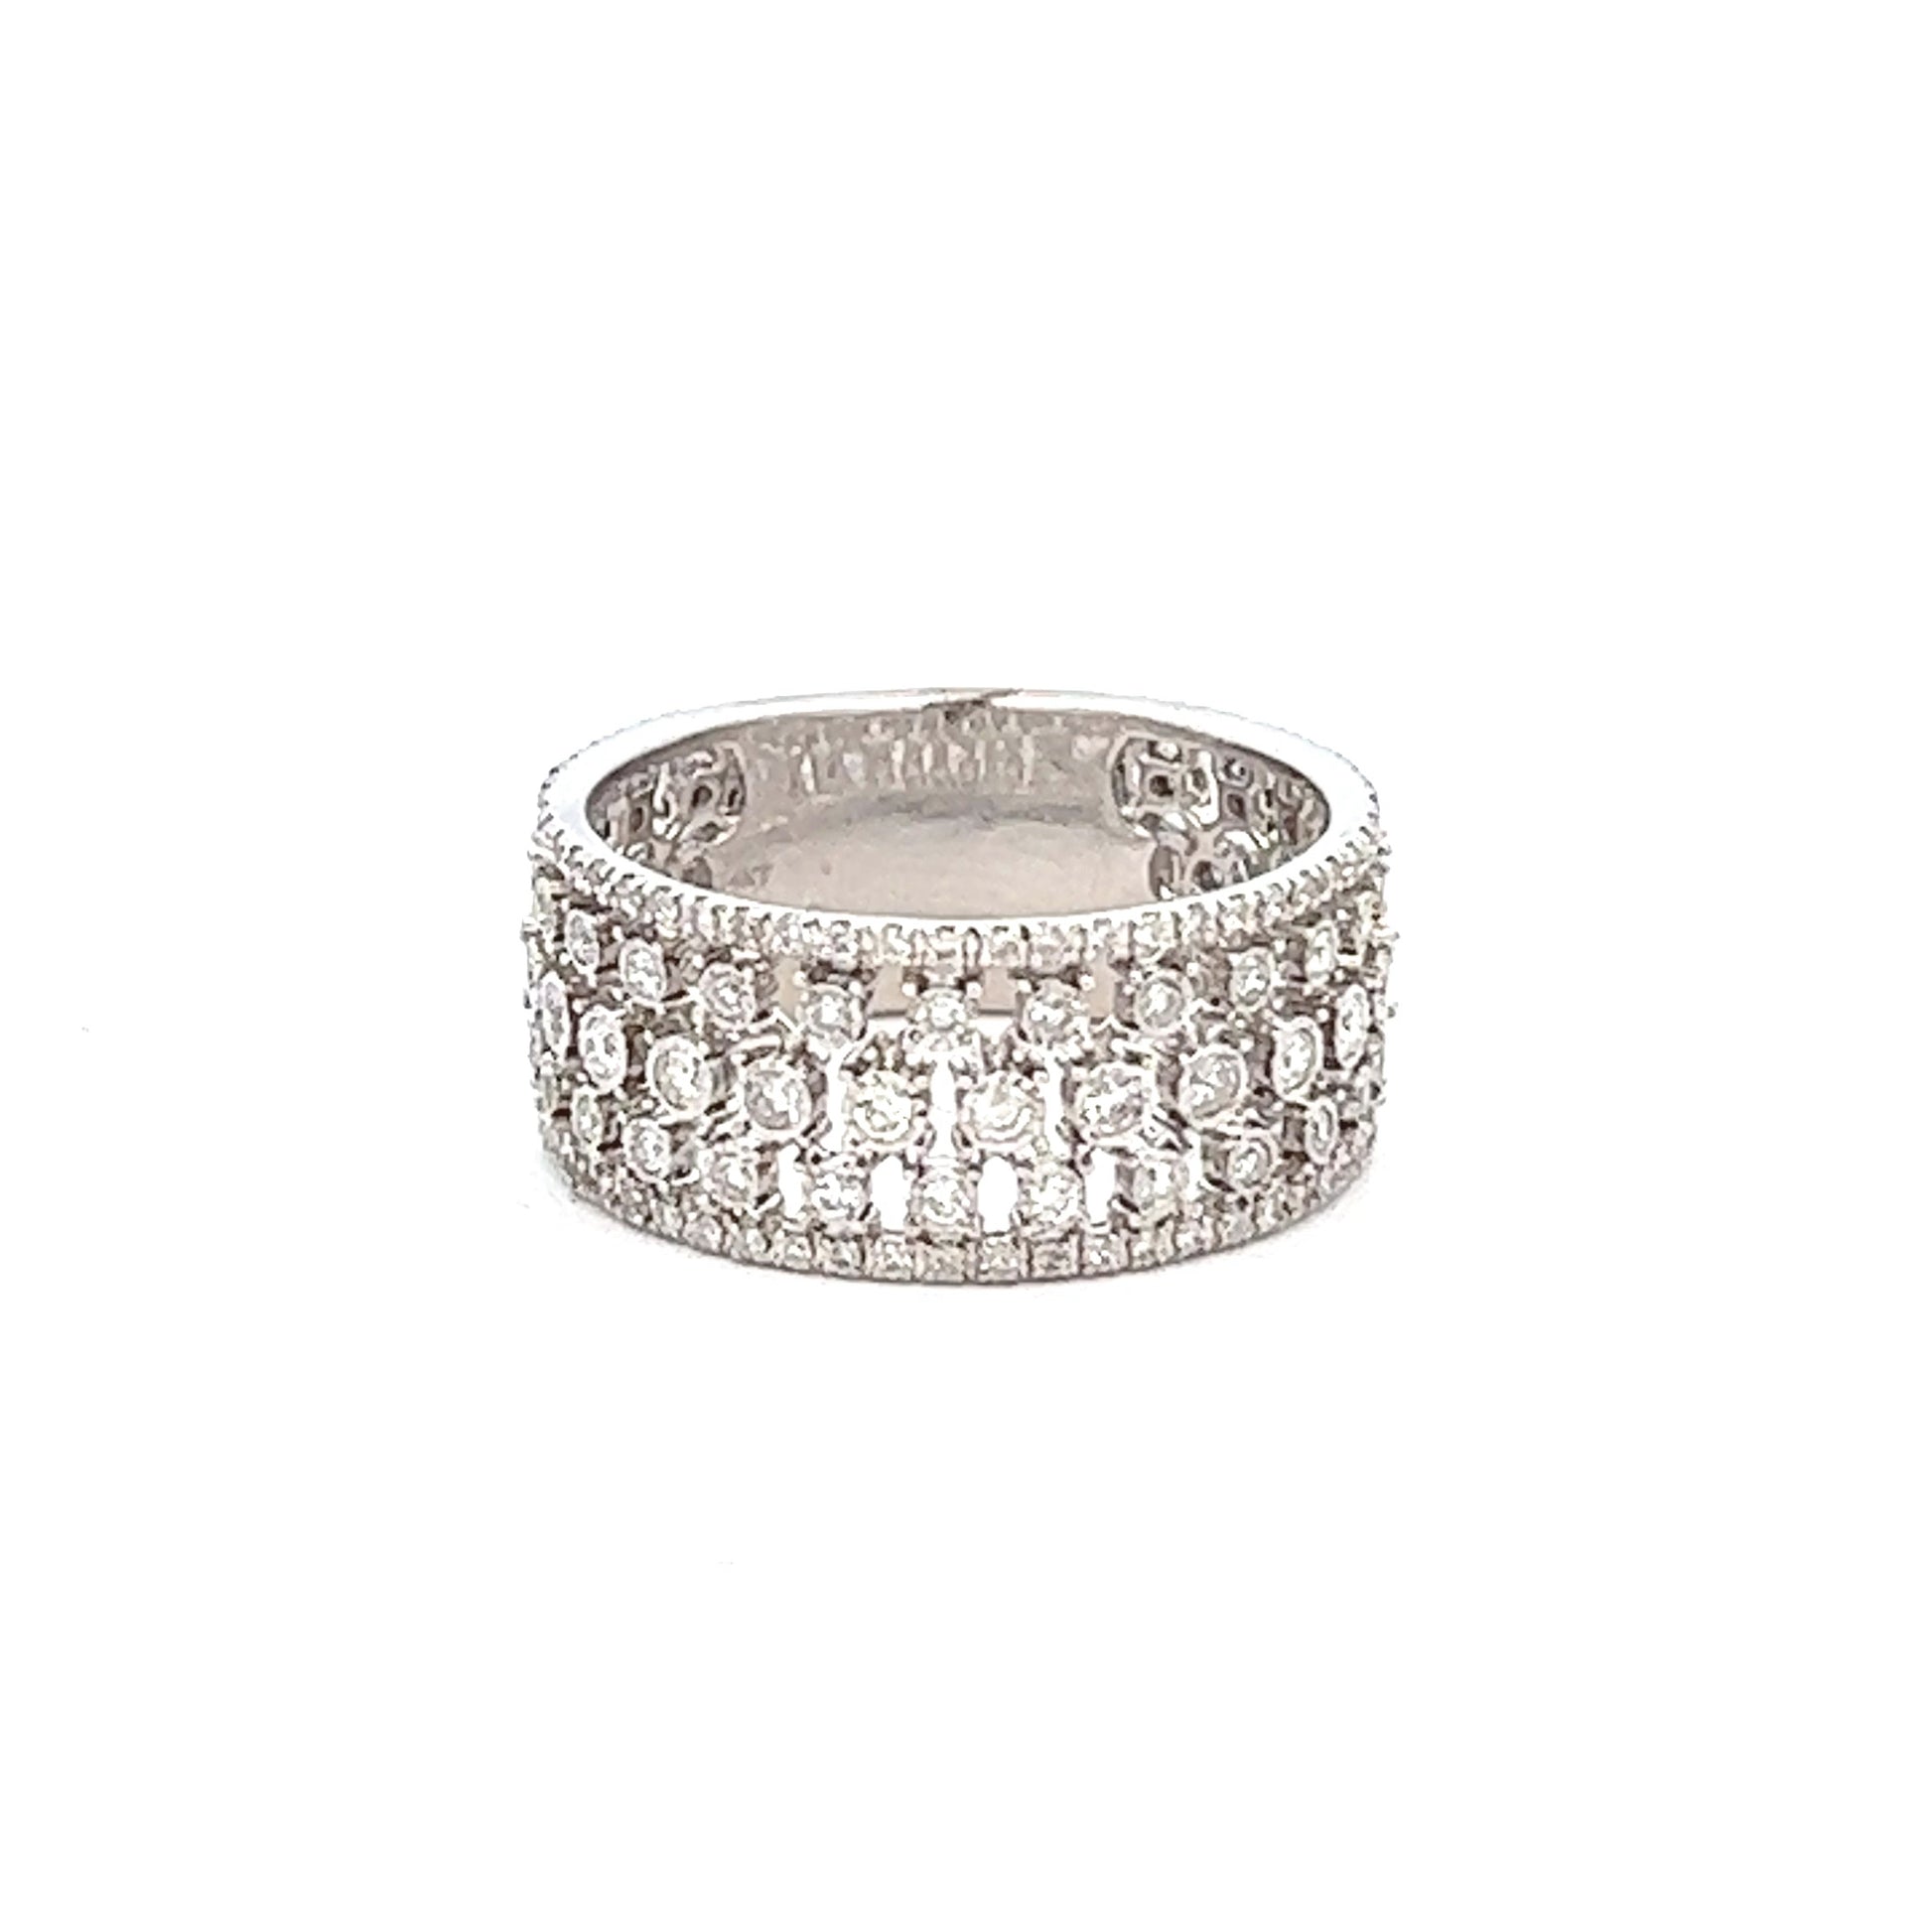 1.16ct Diamond Fashion Ring | 14k White Gold Diamond Stack Ring also known as Diamond Lattice Ring